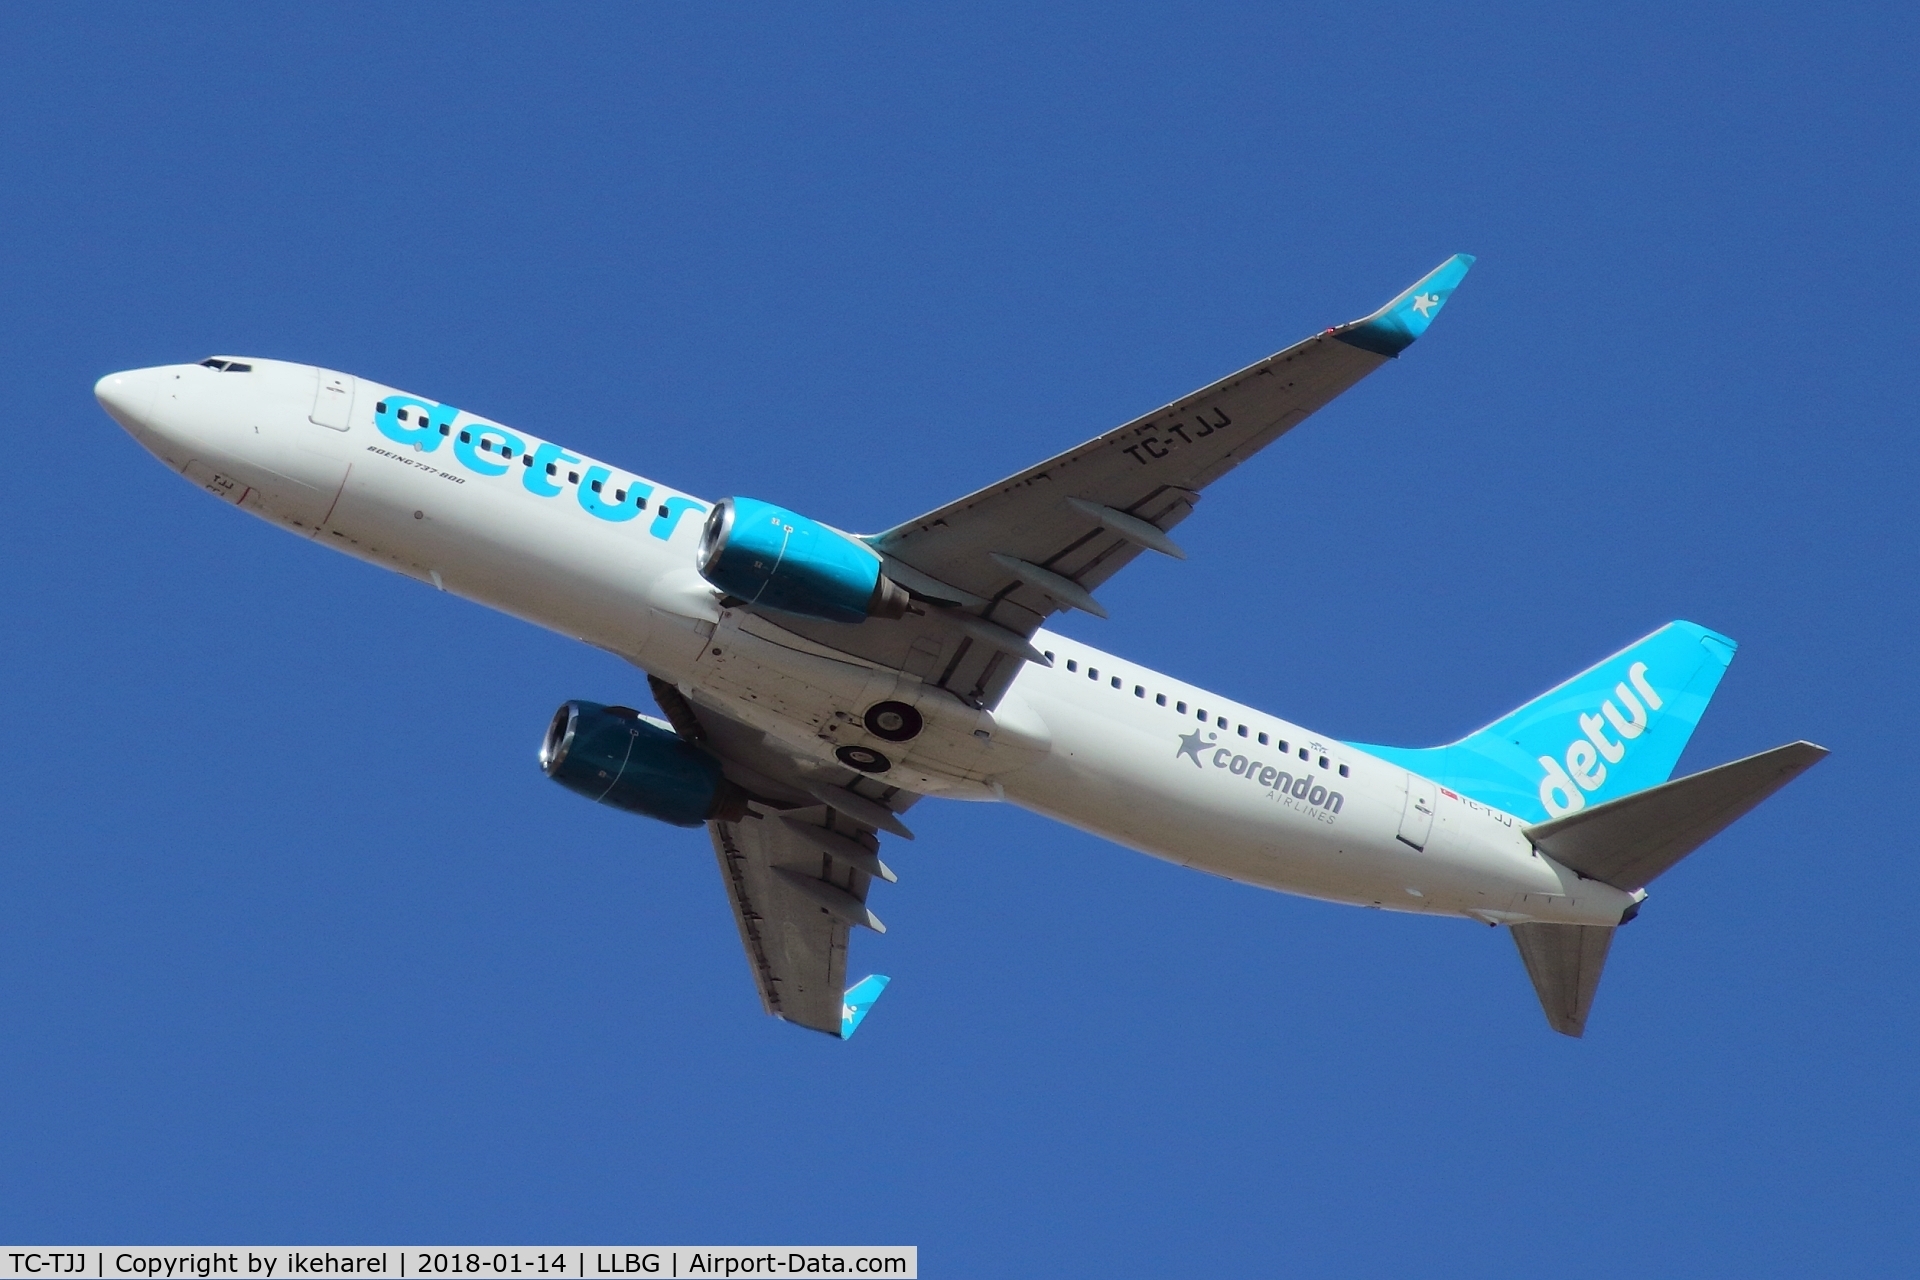 TC-TJJ, 2000 Boeing 737-8S3 C/N 29247, Detur flight for Corendon  to Antalya, duration 1h13m.